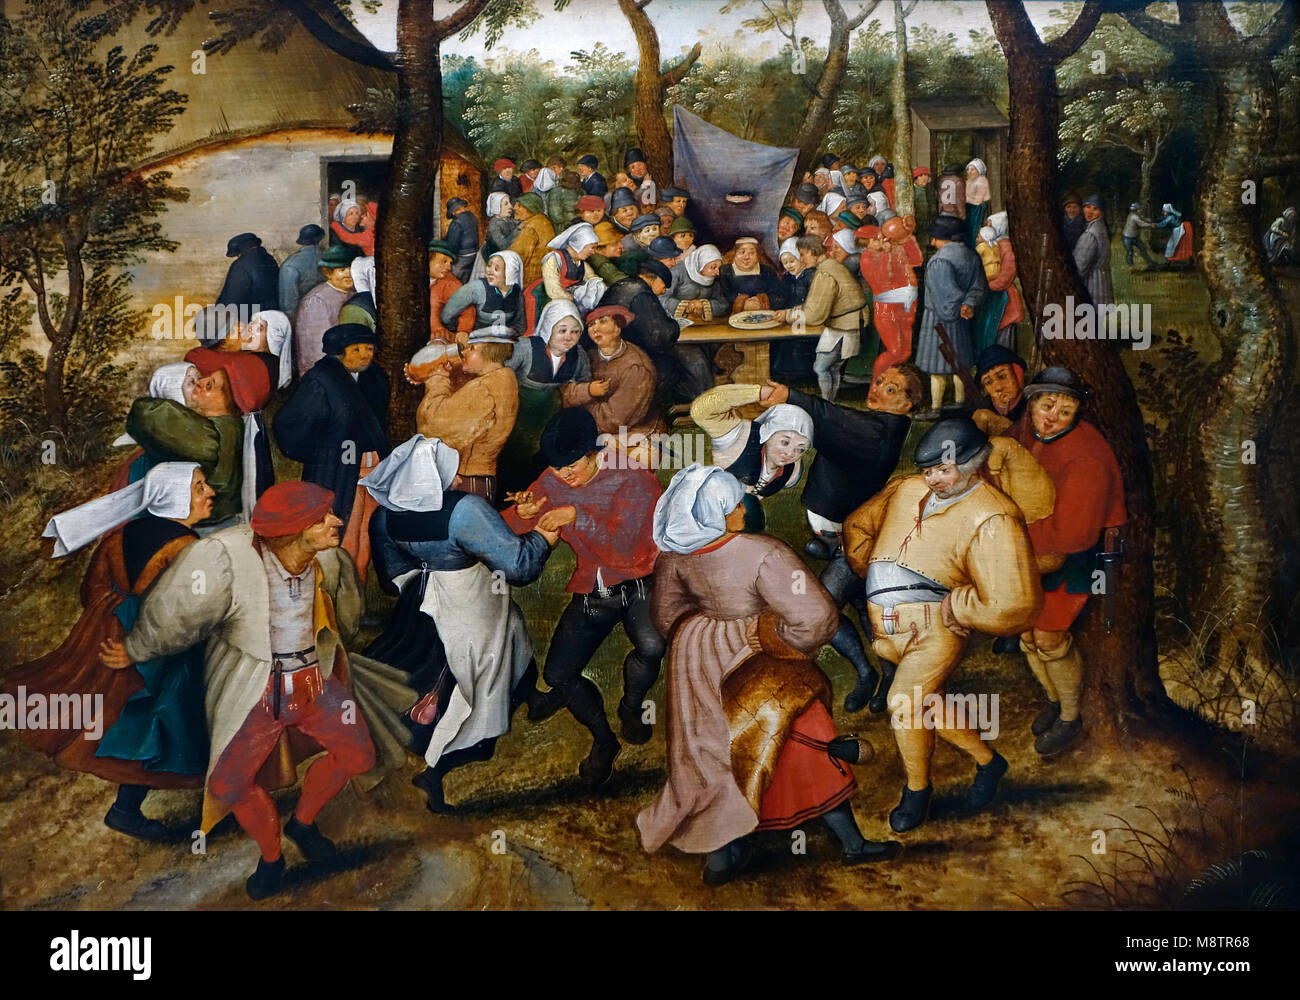 Hochzeit Tanz im Open Air, 17. Jahrhundert Öl Malerei von Flämischen Northern Renaissance Maler Pieter Brueghel der Jüngere/Pieter Brueghel der Jüngere Stockfoto